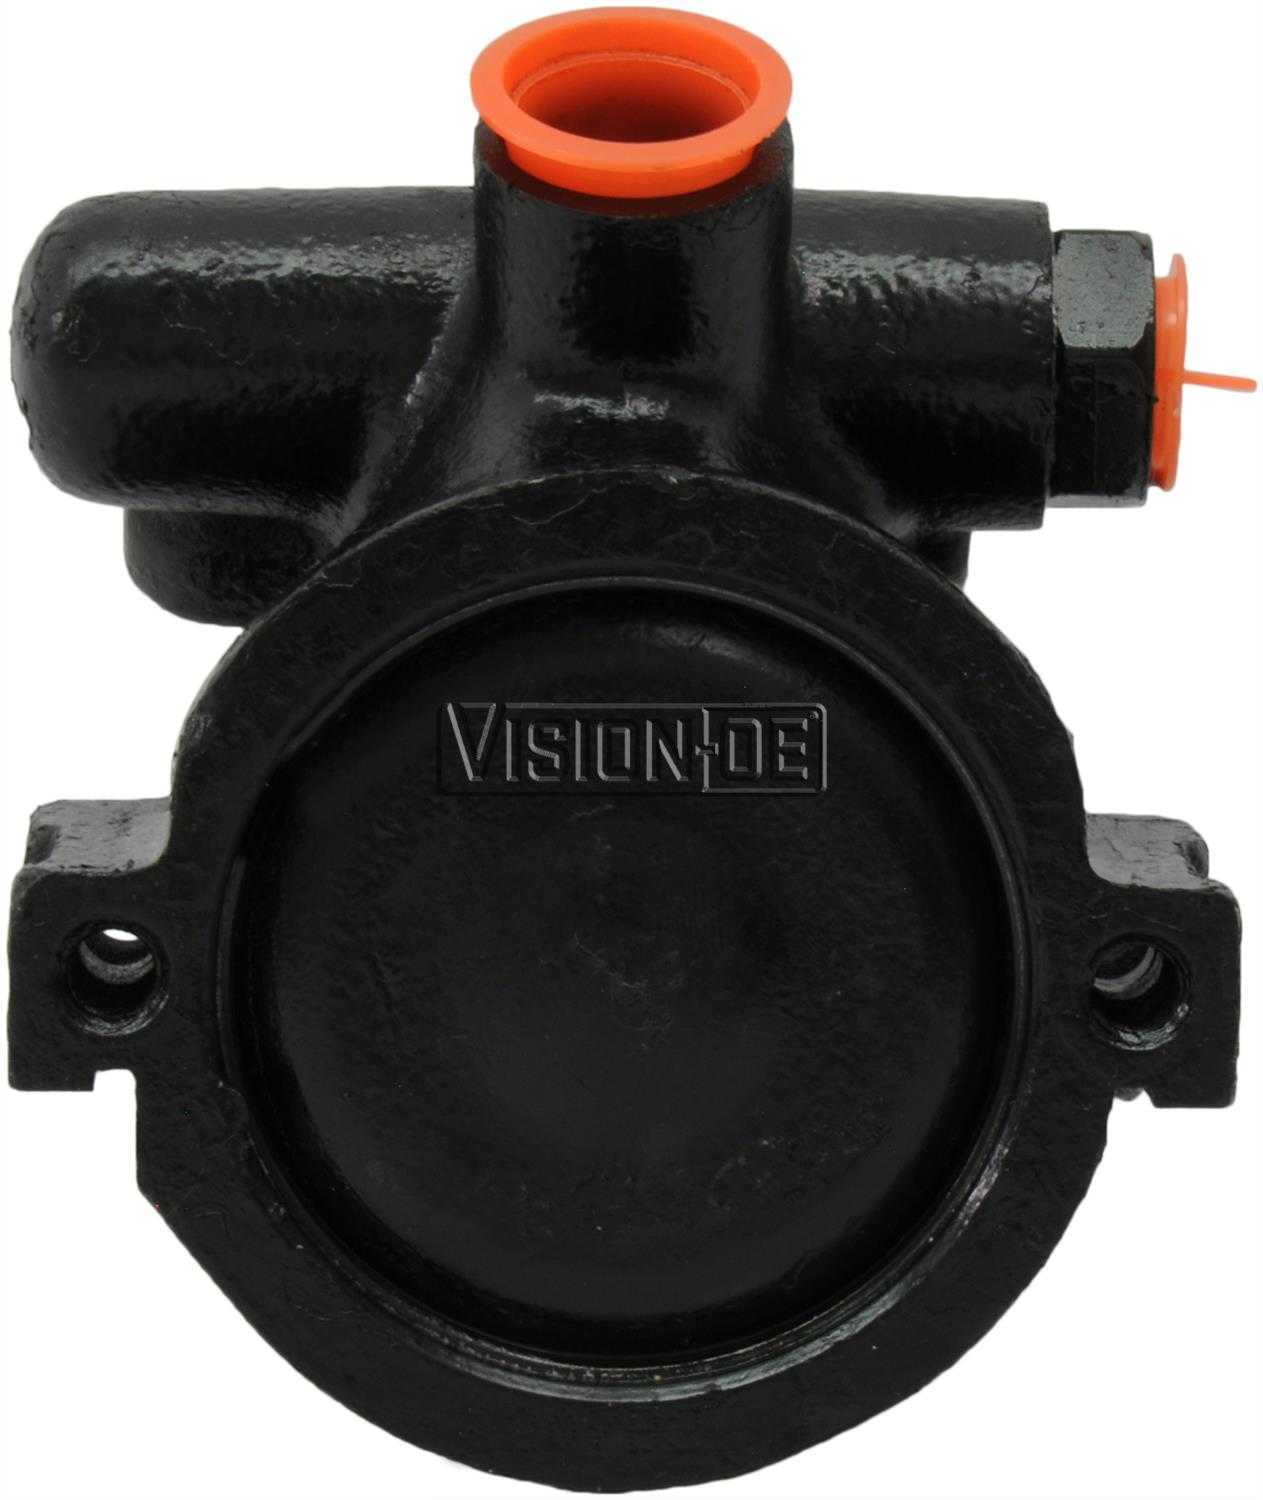 VISION-OE - Reman Power Steering Pump - VOE 734-0102